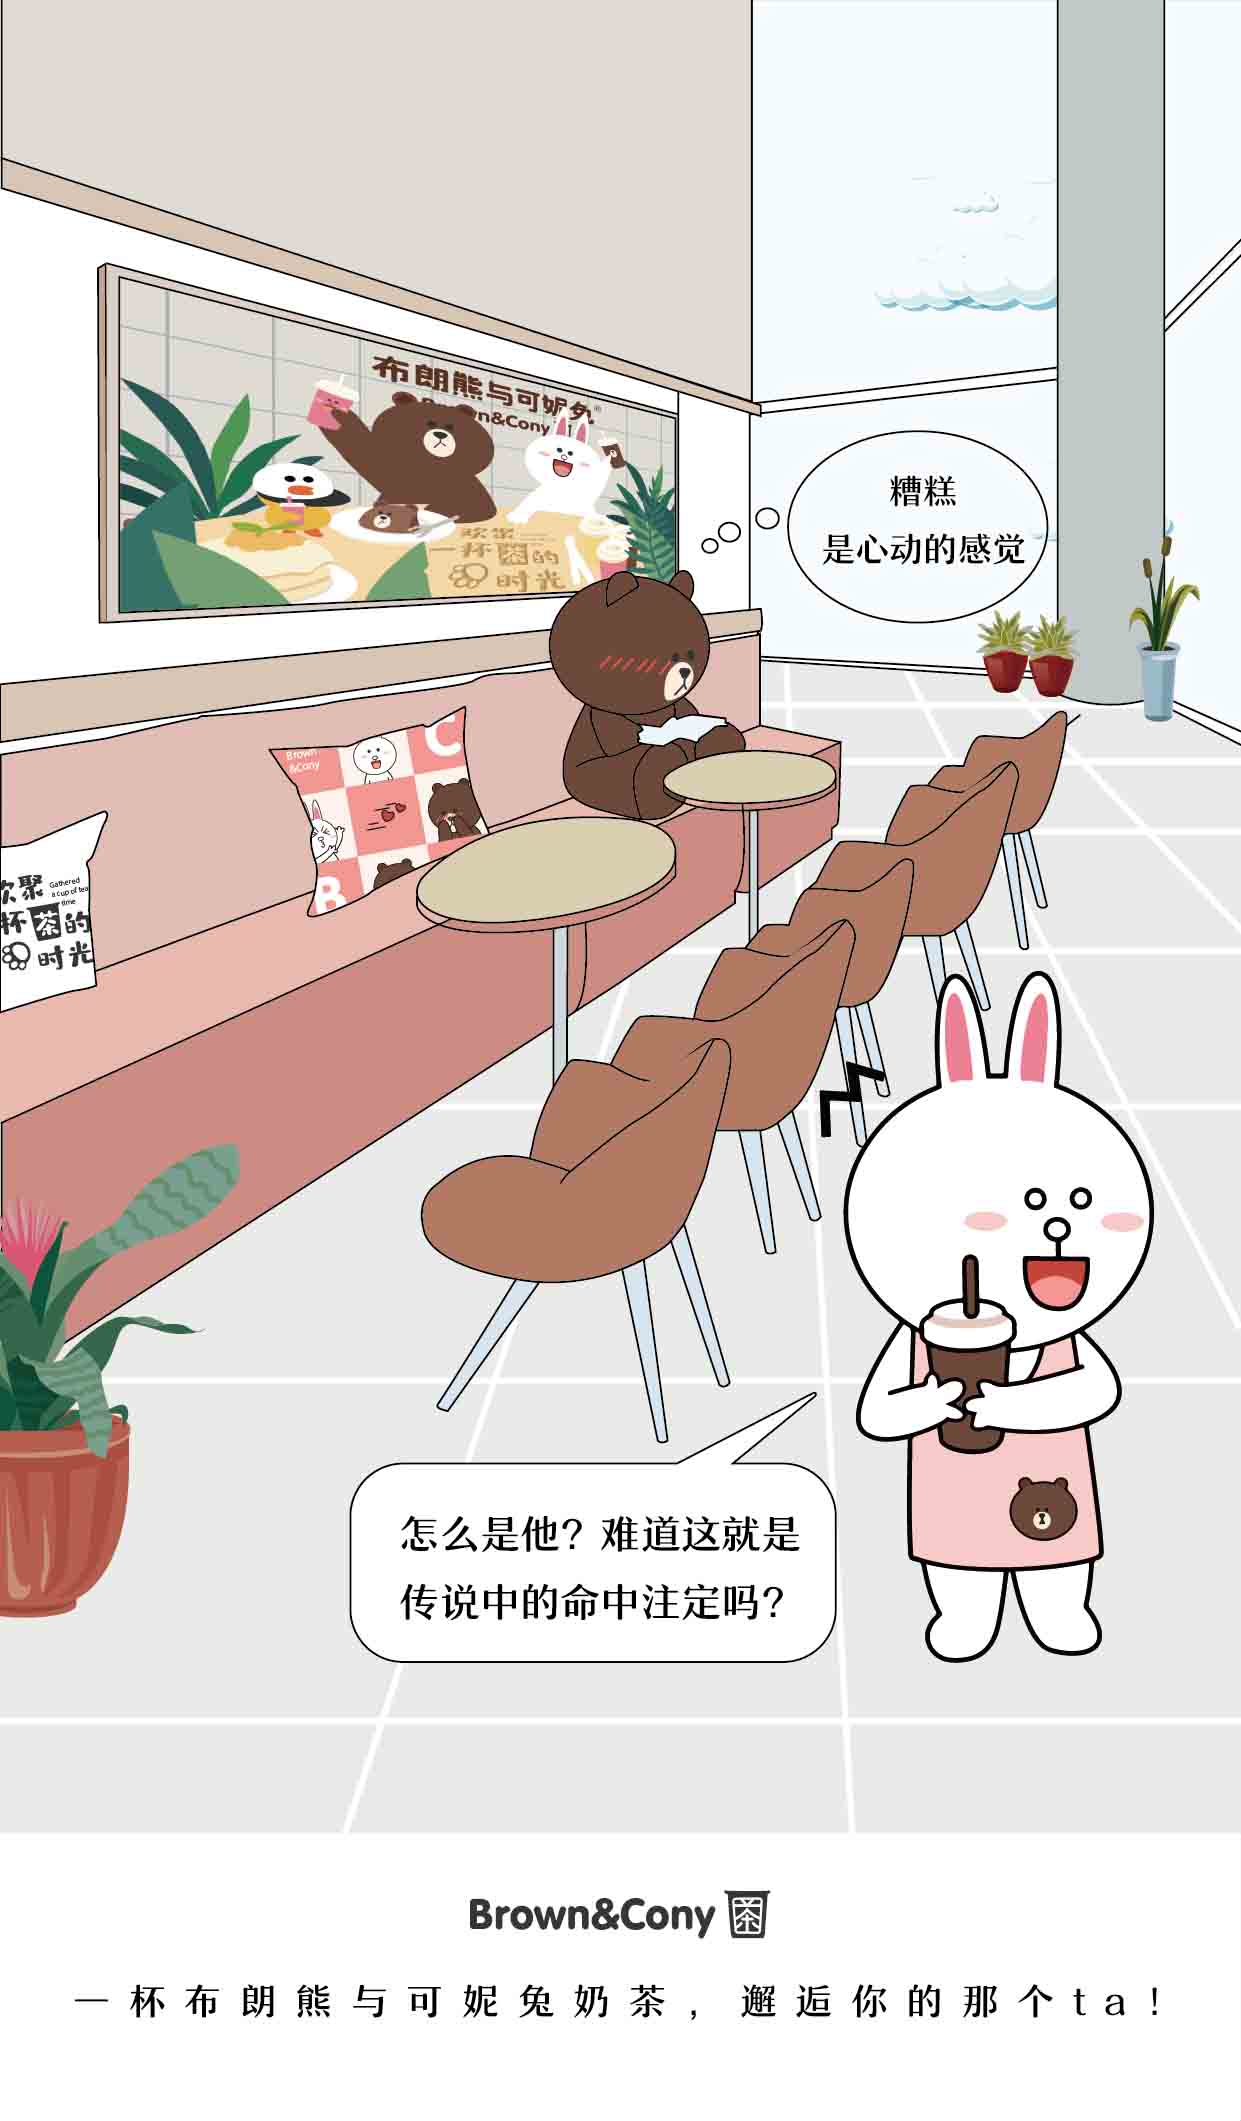 七夕——布朗熊与可妮兔奶茶